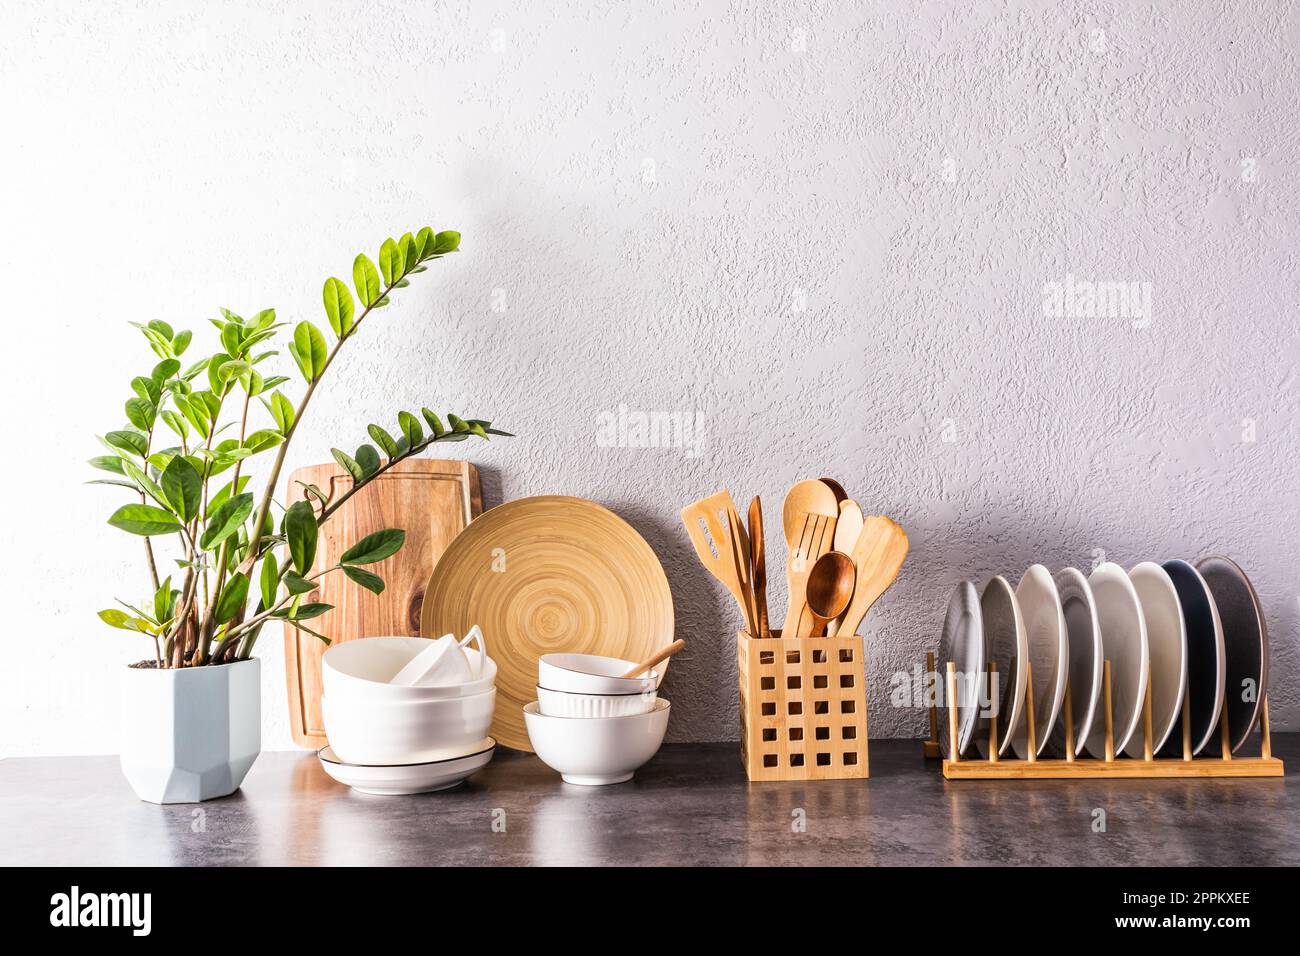 https://c8.alamy.com/compes/2ppkxee/un-conjunto-de-varios-utensilios-de-cocina-y-herramientas-platos-de-ceramica-en-colores-claros-en-una-encimera-de-cocina-moderna-vista-frontal-un-espacio-de-copia-2ppkxee.jpg